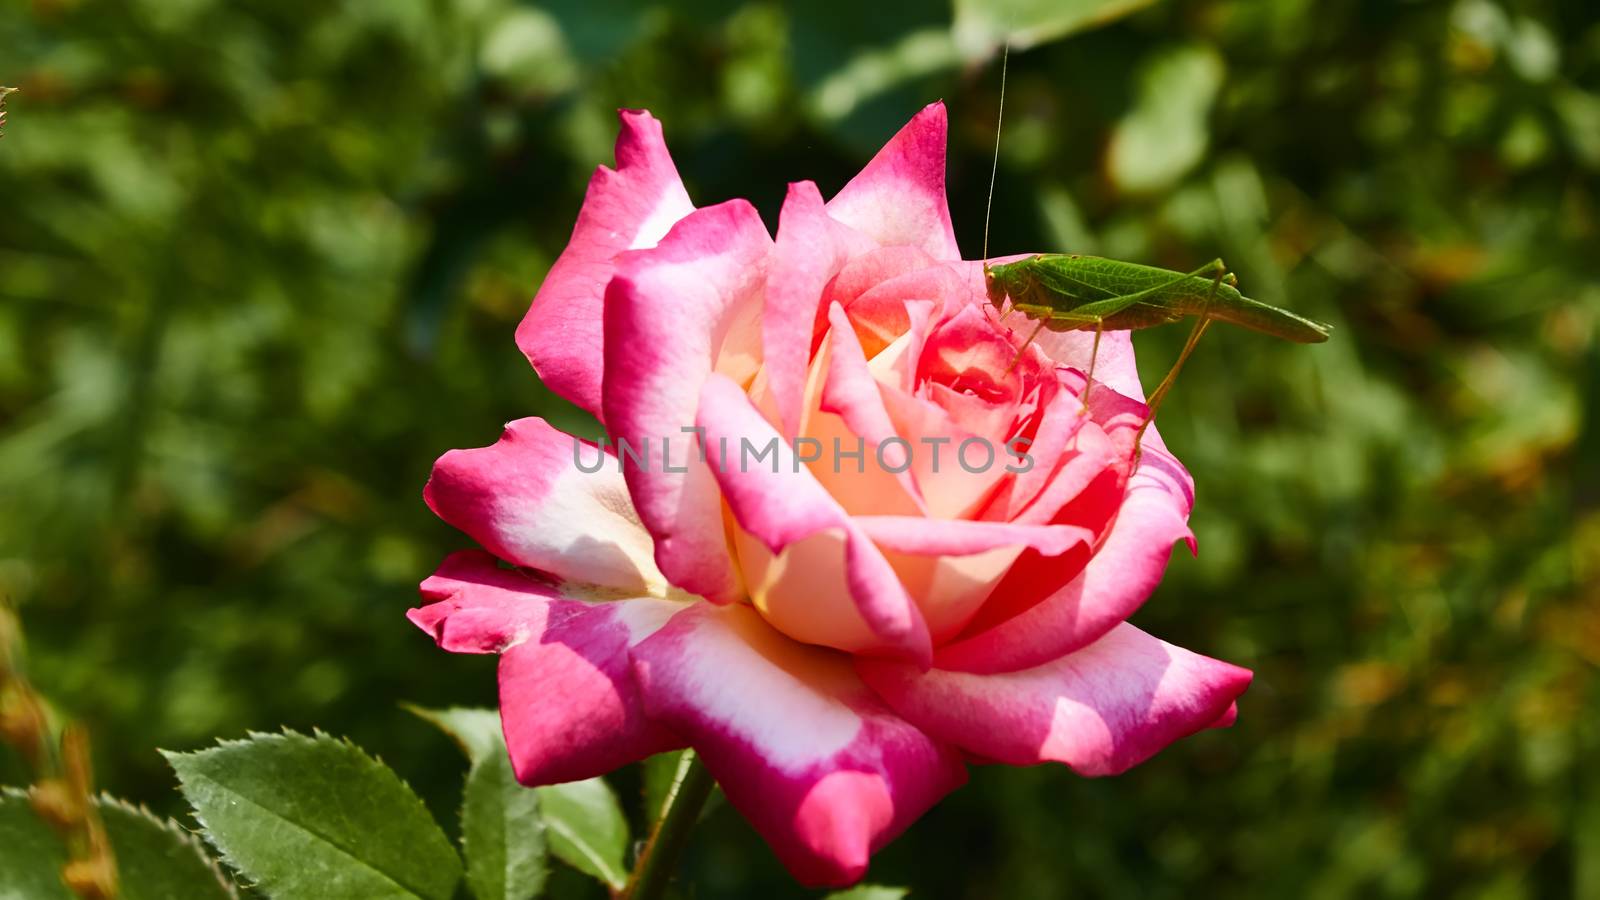 Katydid Tettigonia cantans on a pink rose.  by sarymsakov